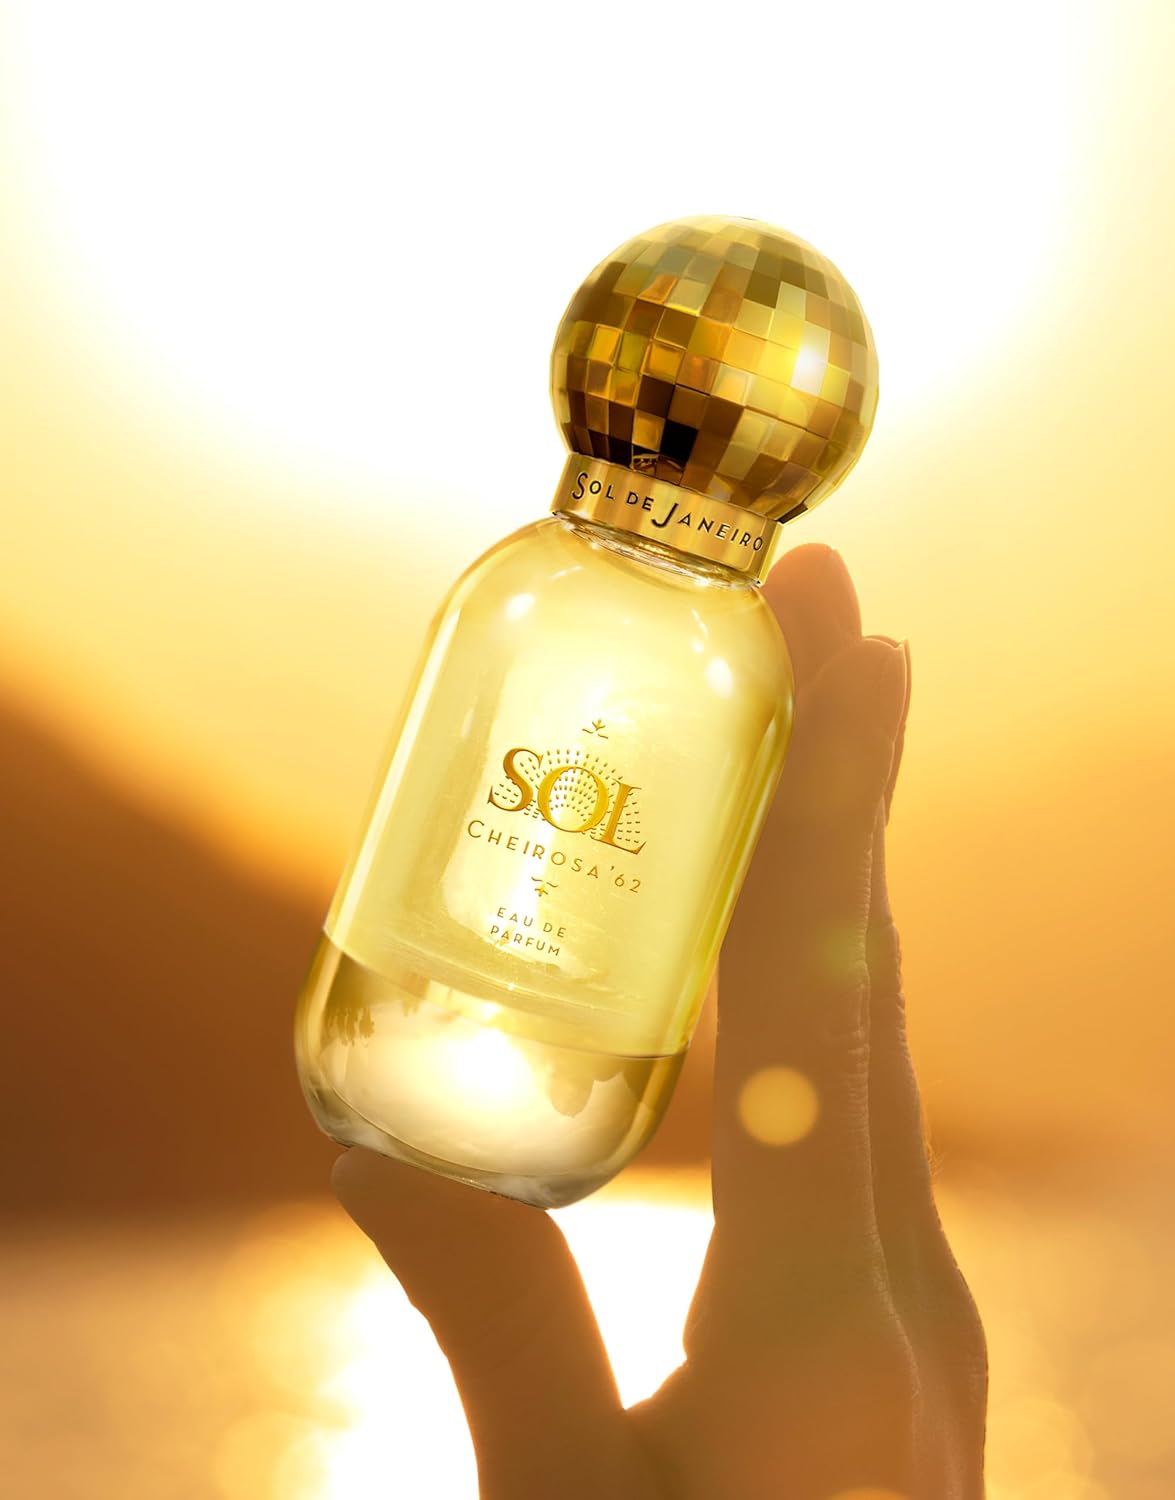 SOL DE JANEIRO Cheirosa '62 Eau de Parfum 50mL/1.69 oz. : Beauty & Personal Care